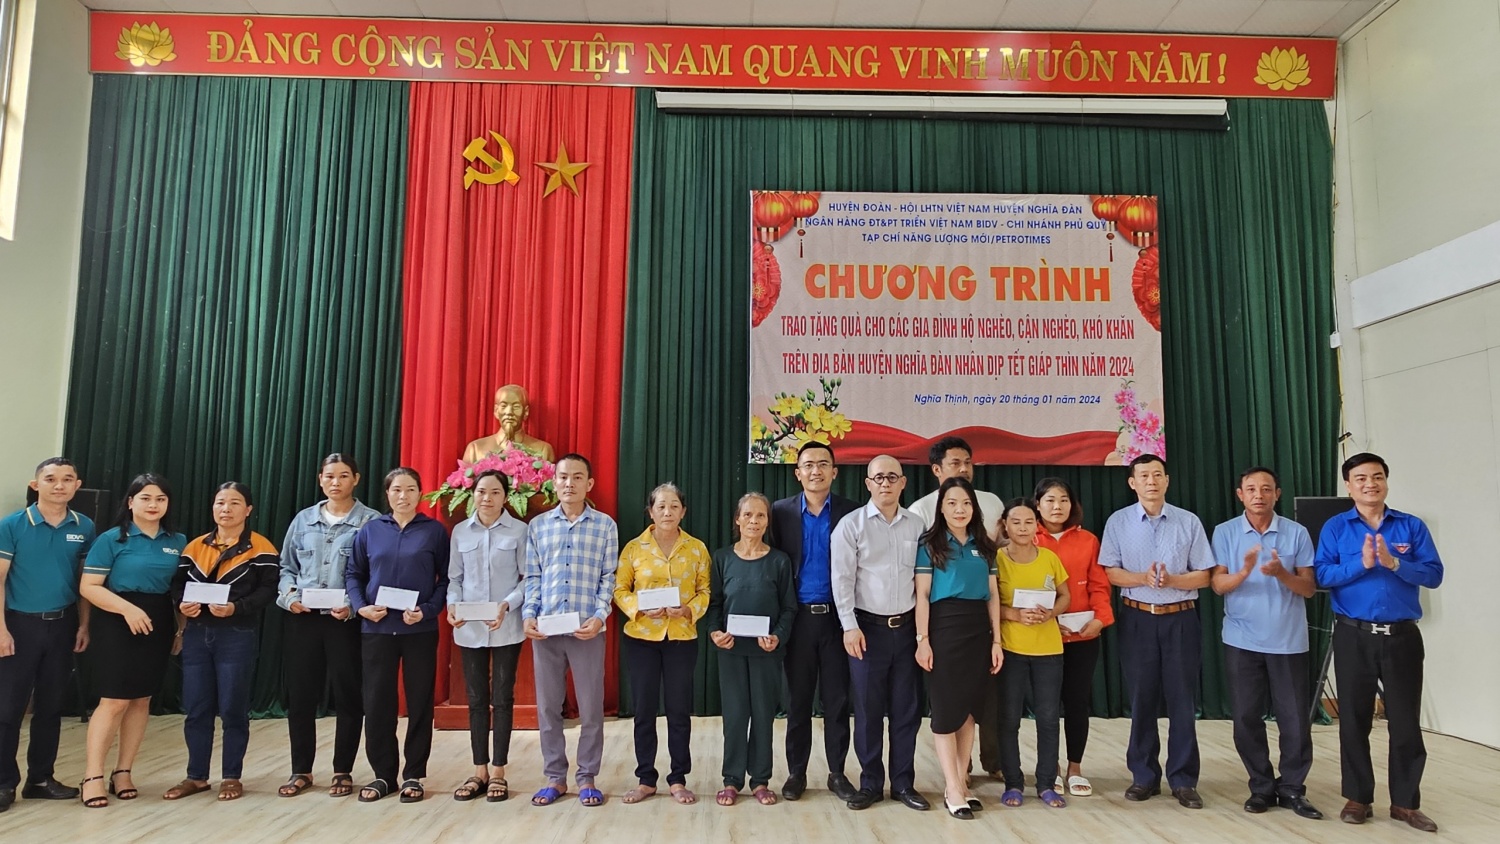 Nghệ An: BIDV đồng hành cùng bà con nghèo các xã thuộc huyện Nghĩa Đàn dịp Xuân Giáp Thìn 2024